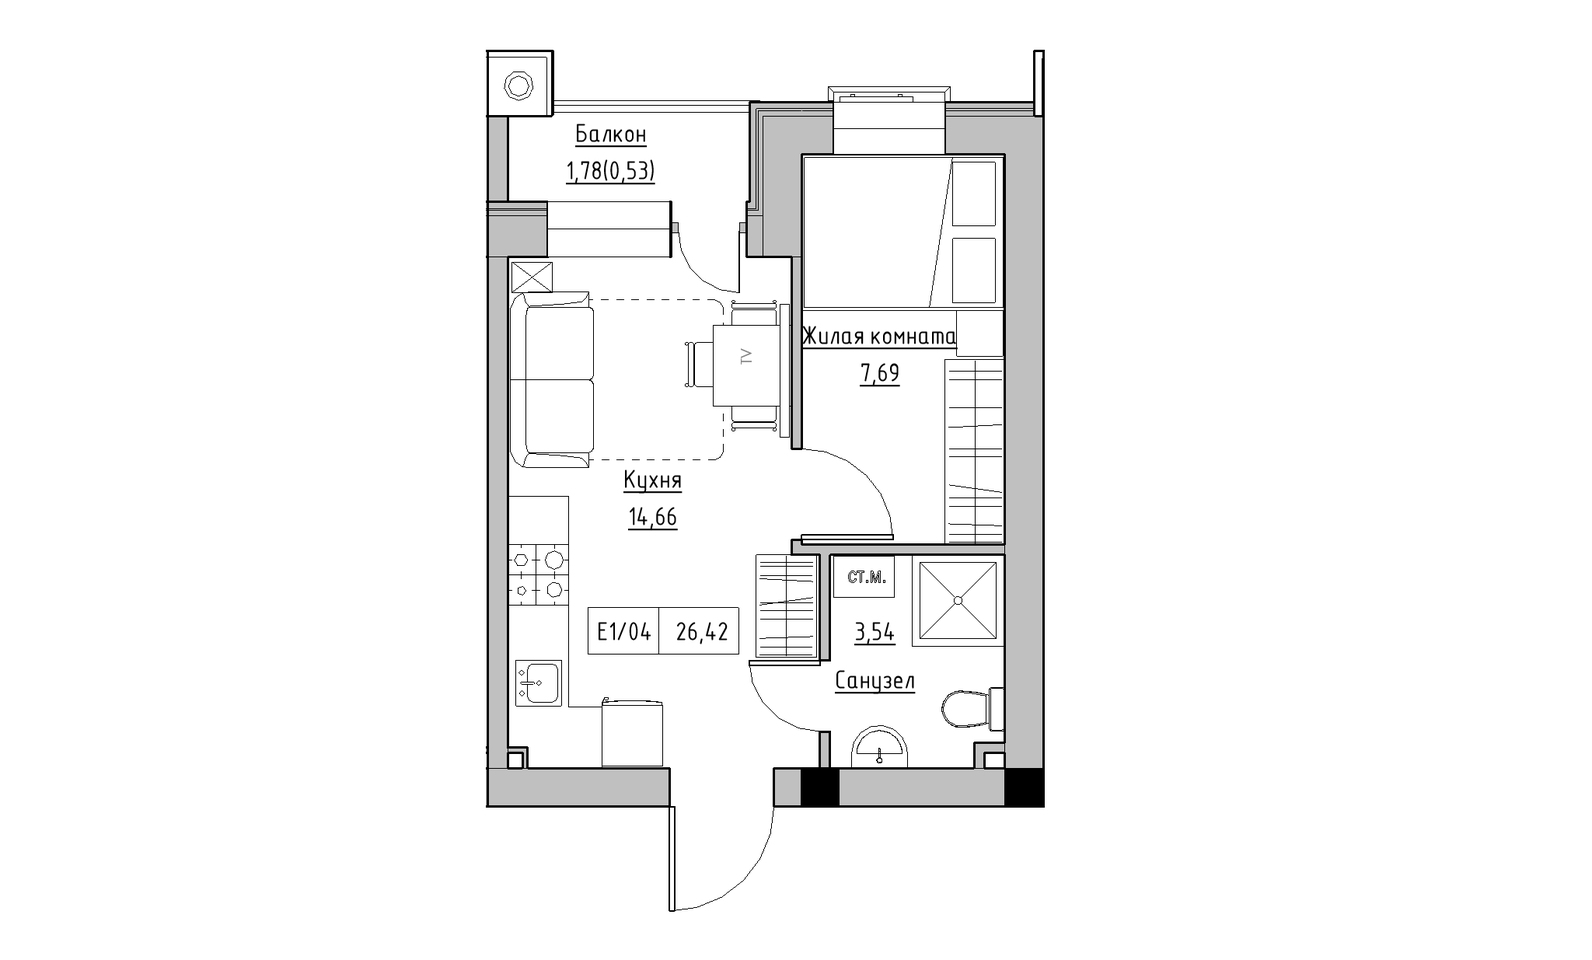 Планування 1-к квартира площею 26.42м2, KS-014-05/0008.